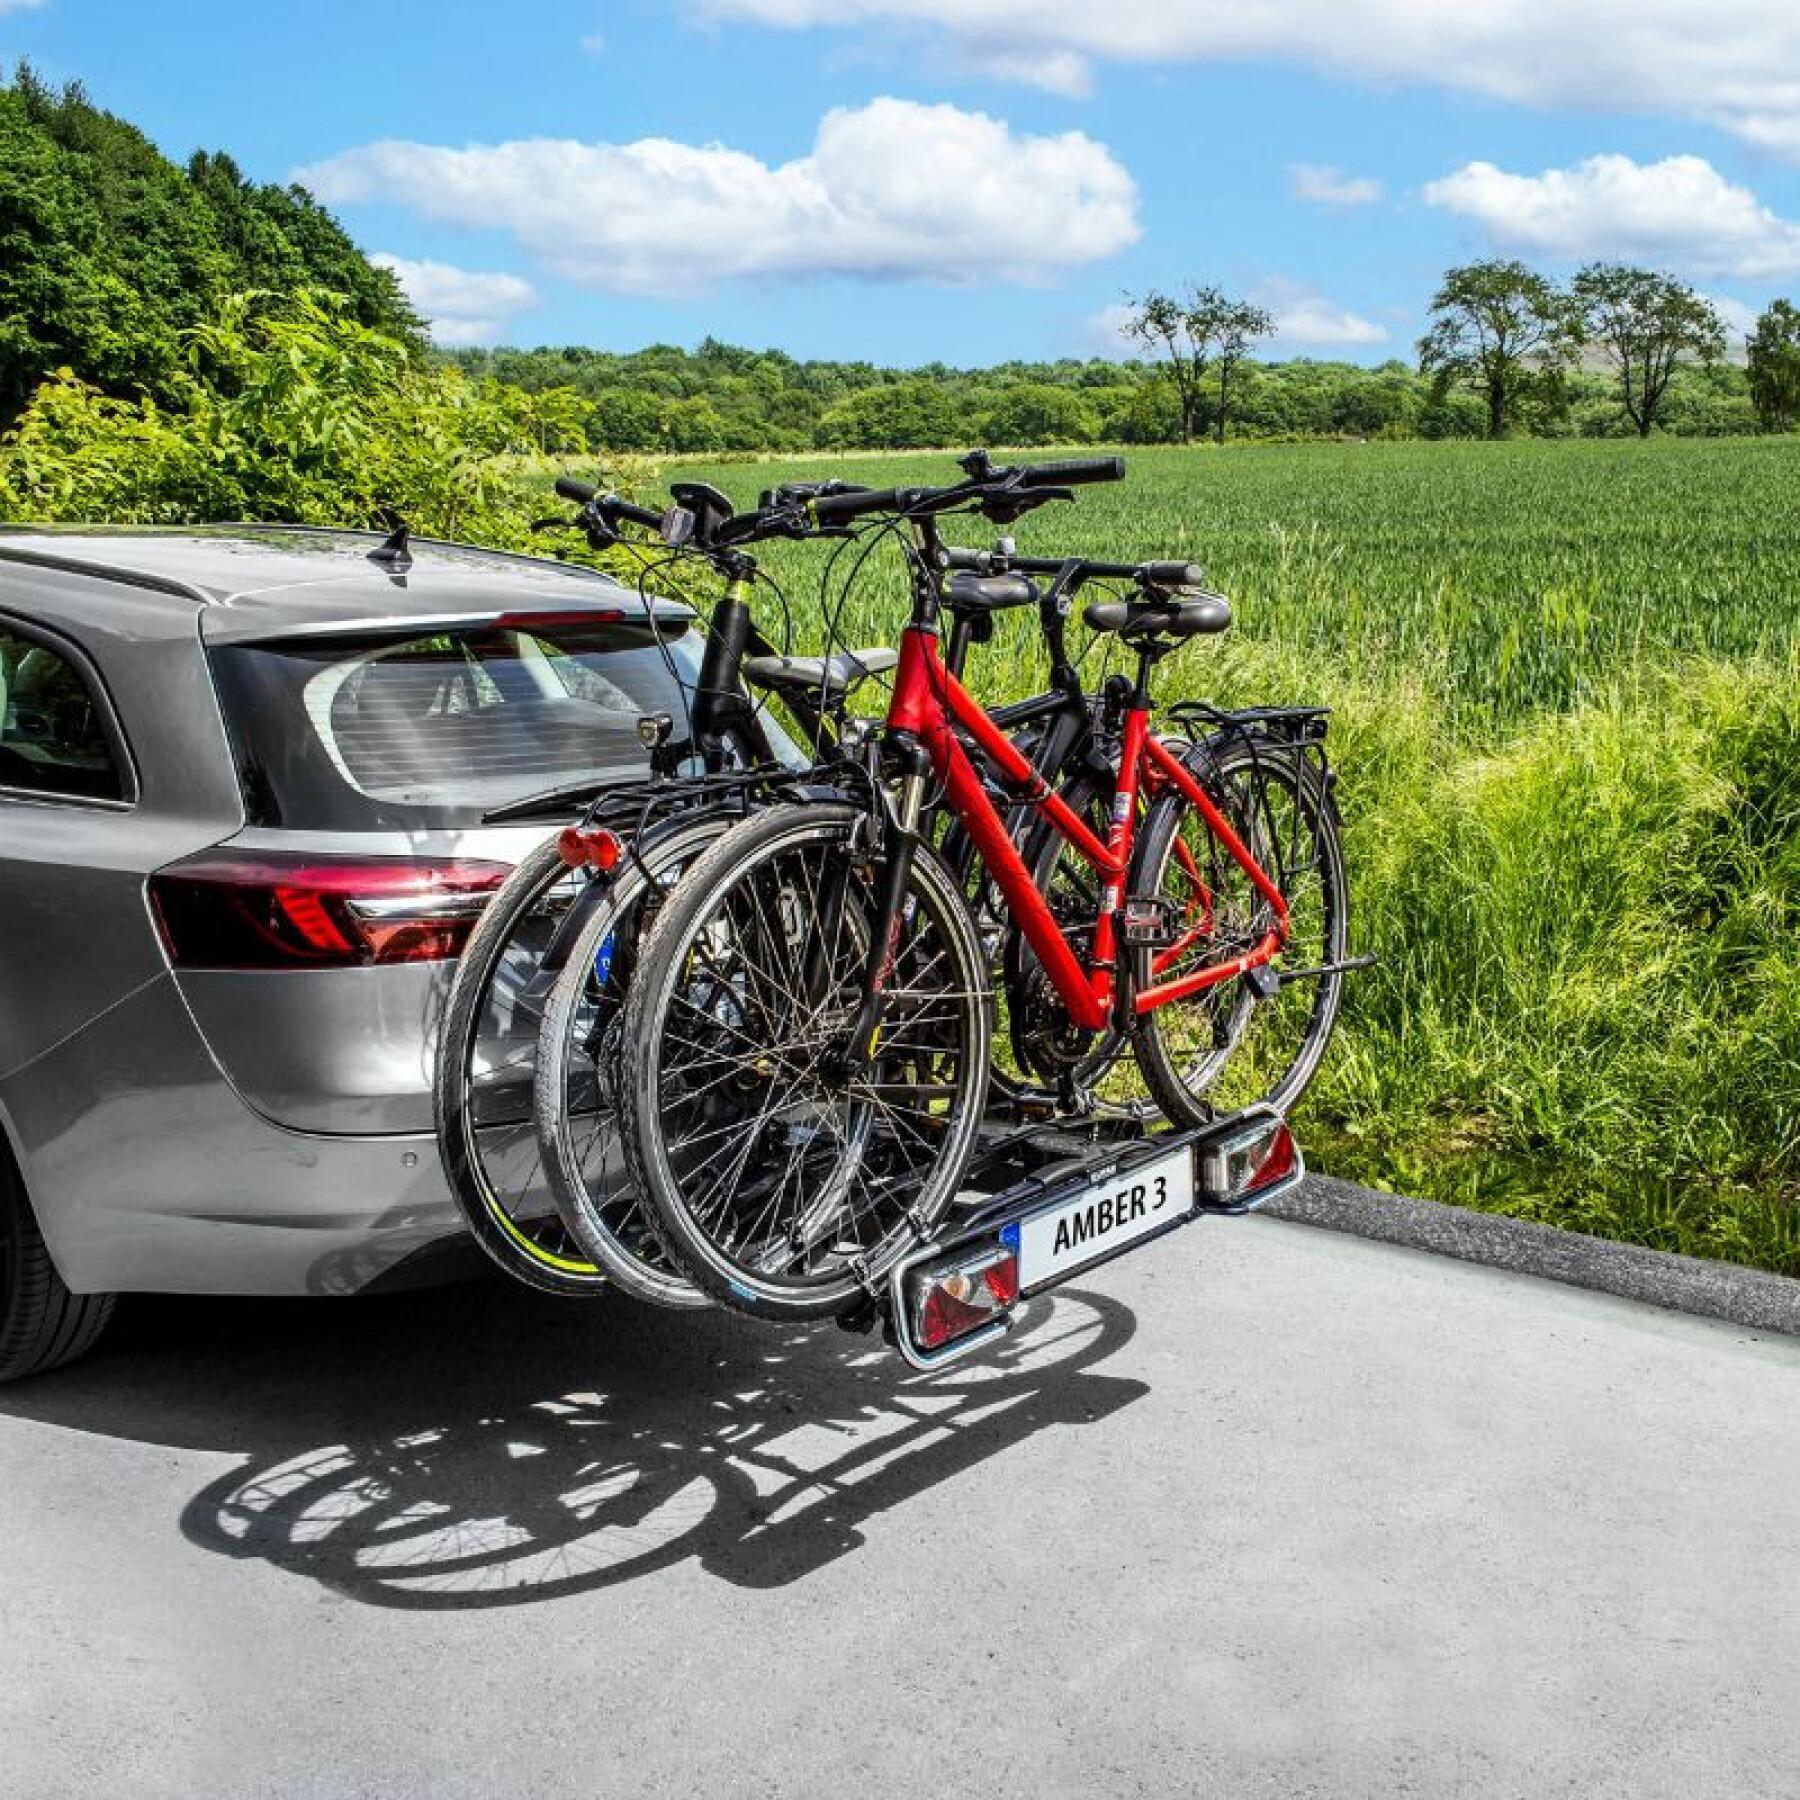 Fahrradträger Plattform für 3 Fahrräder Befestigung rapide auf der Anhängerkupplung - kompatibel, um 2 Fahrräder zu stellen P2R Eufab Amber 60 kgs